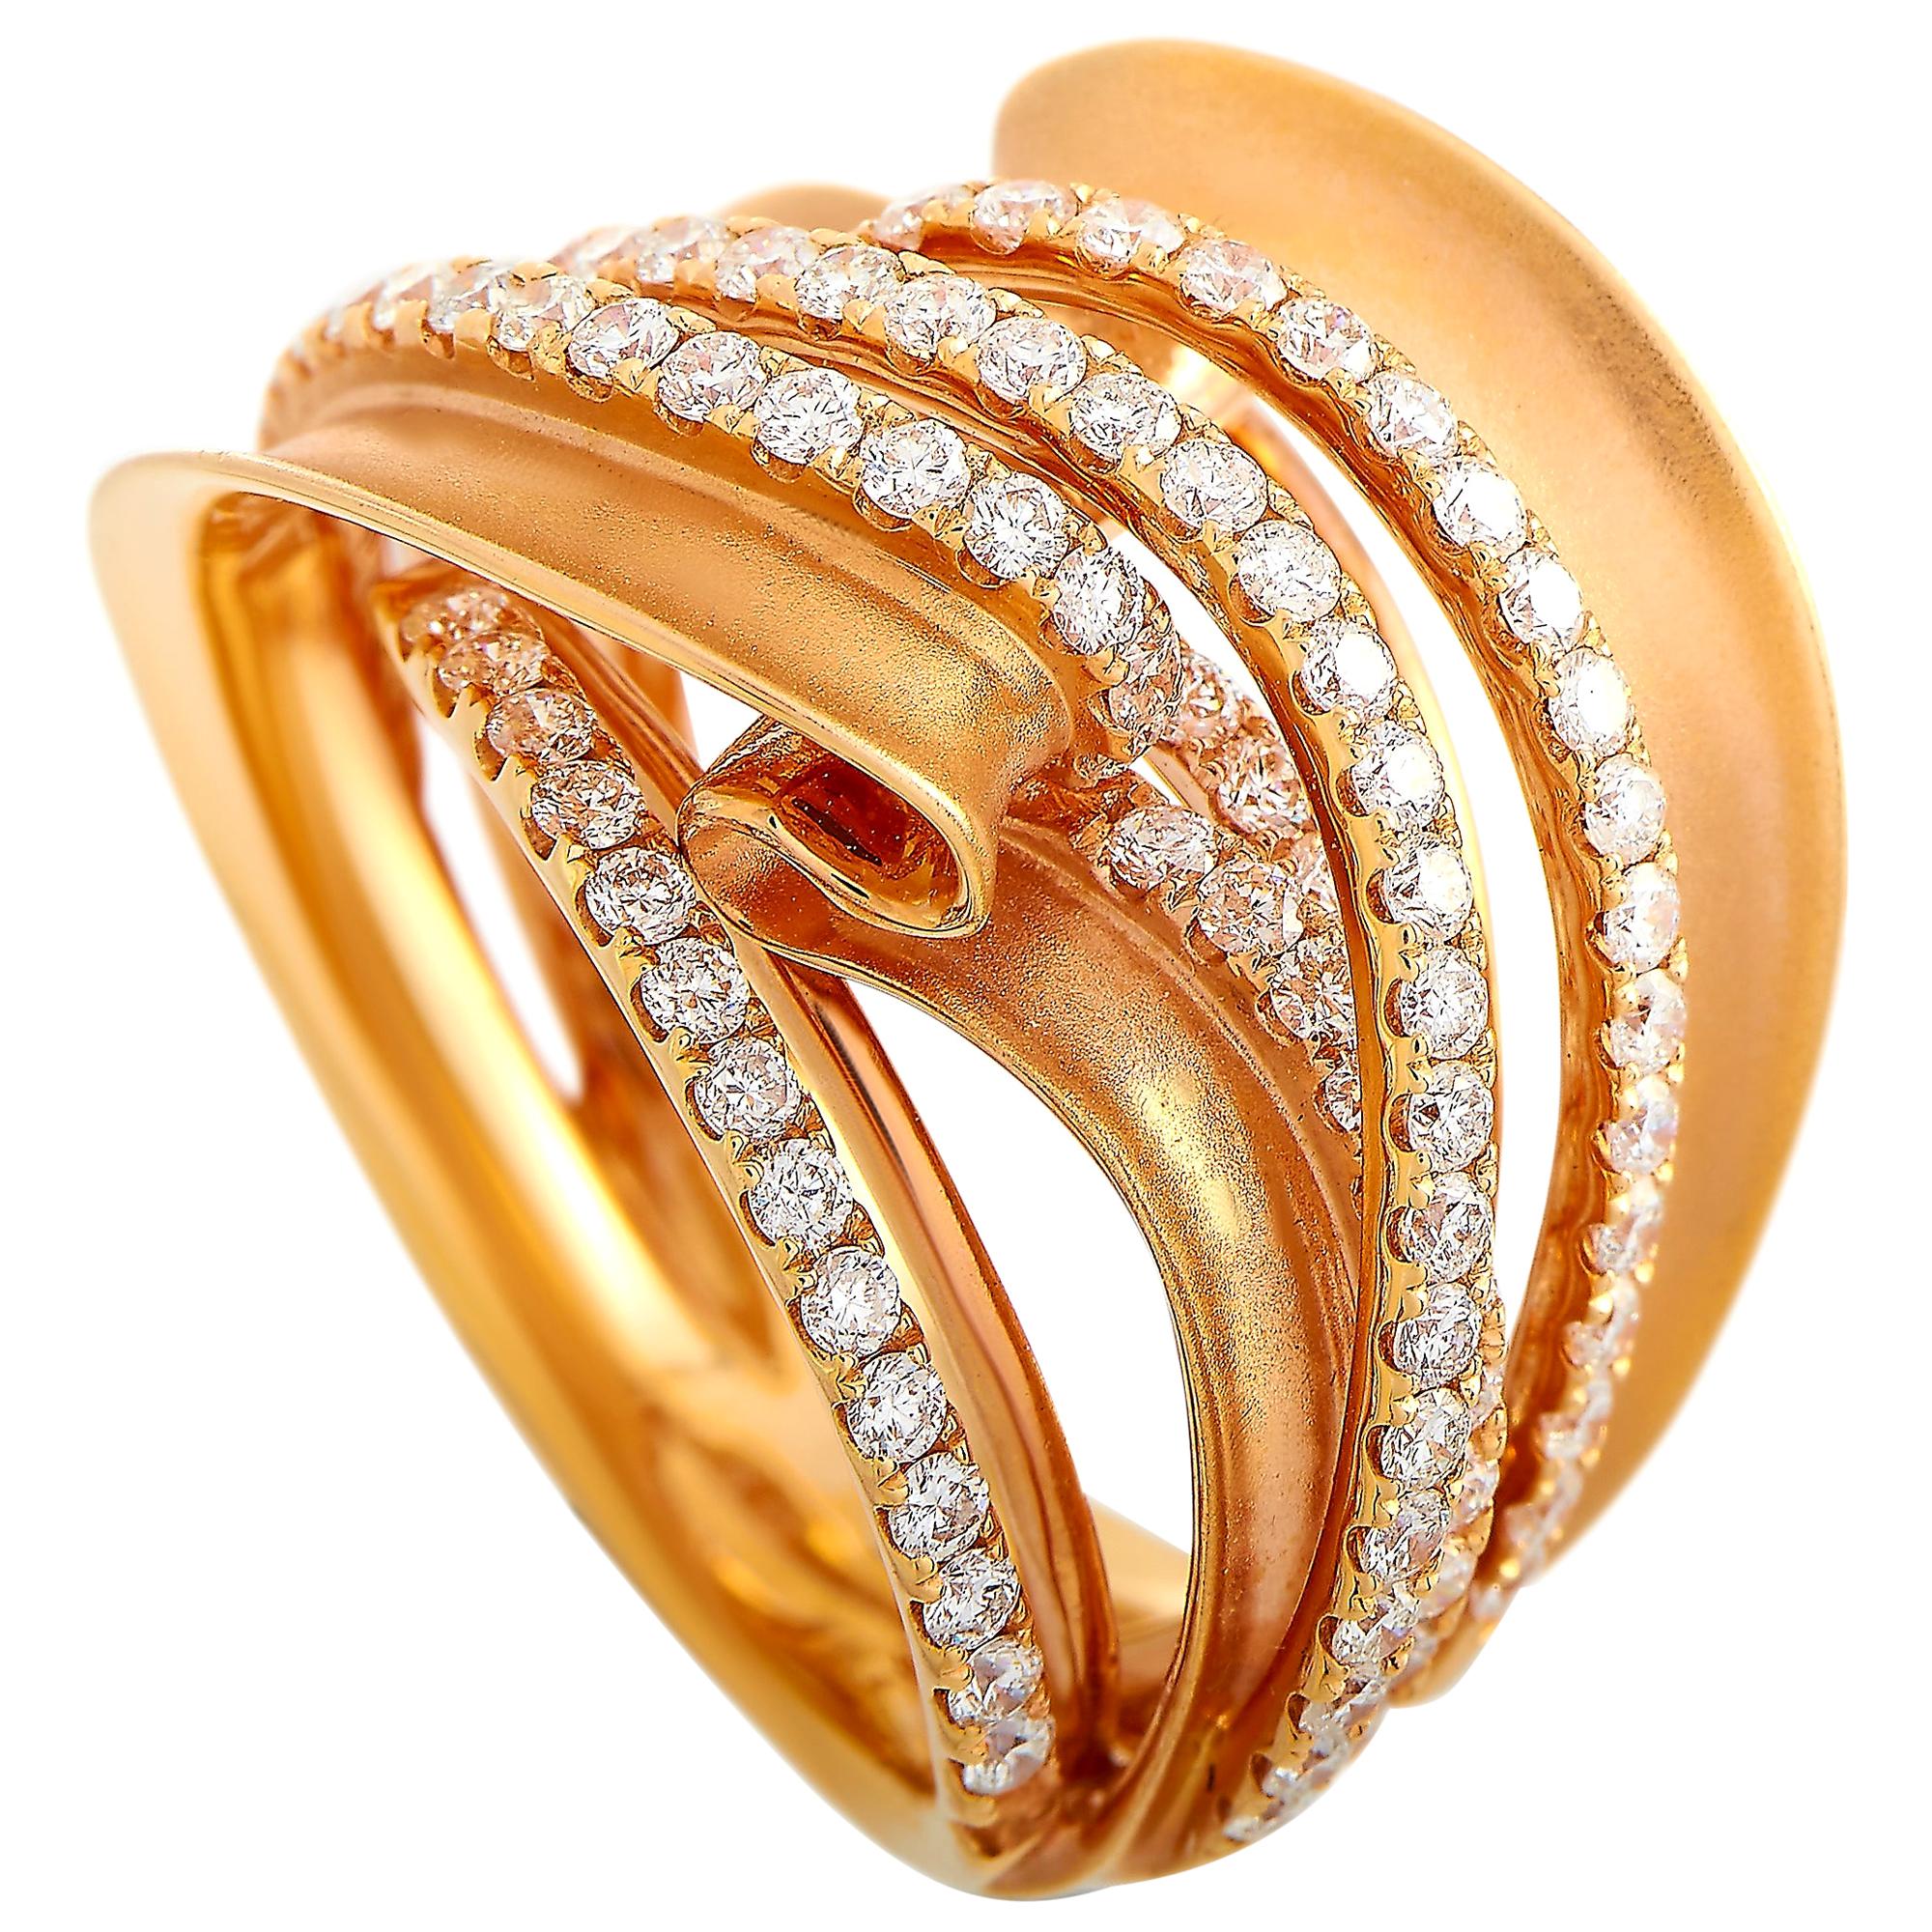 LB Exclusive 18 Karat Rose Gold 1.65 Carat Diamond Ring